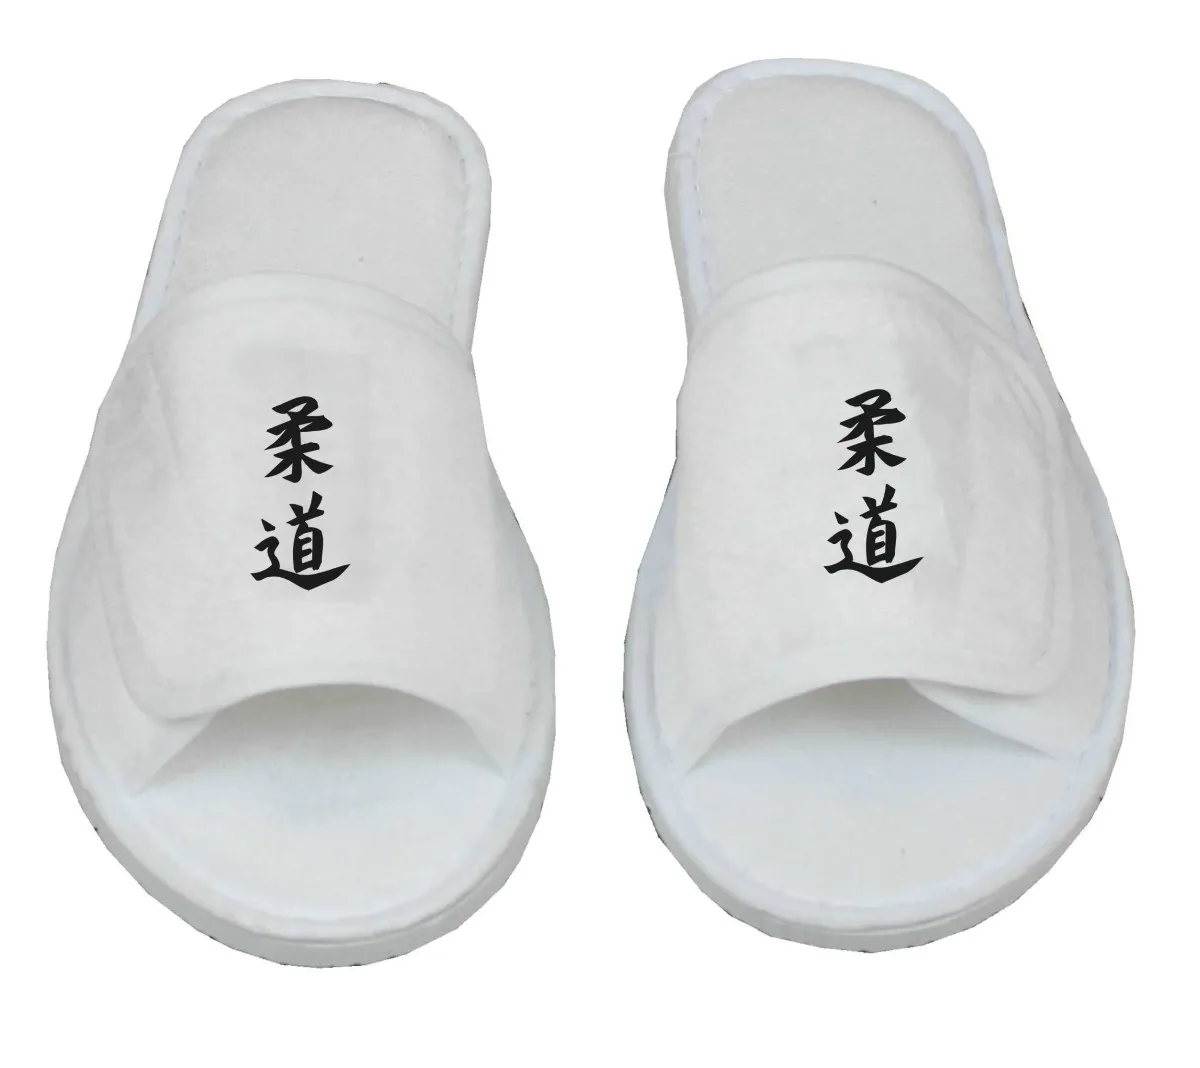 Frottee Slipper mit Judo Schriftzeichen Kanji